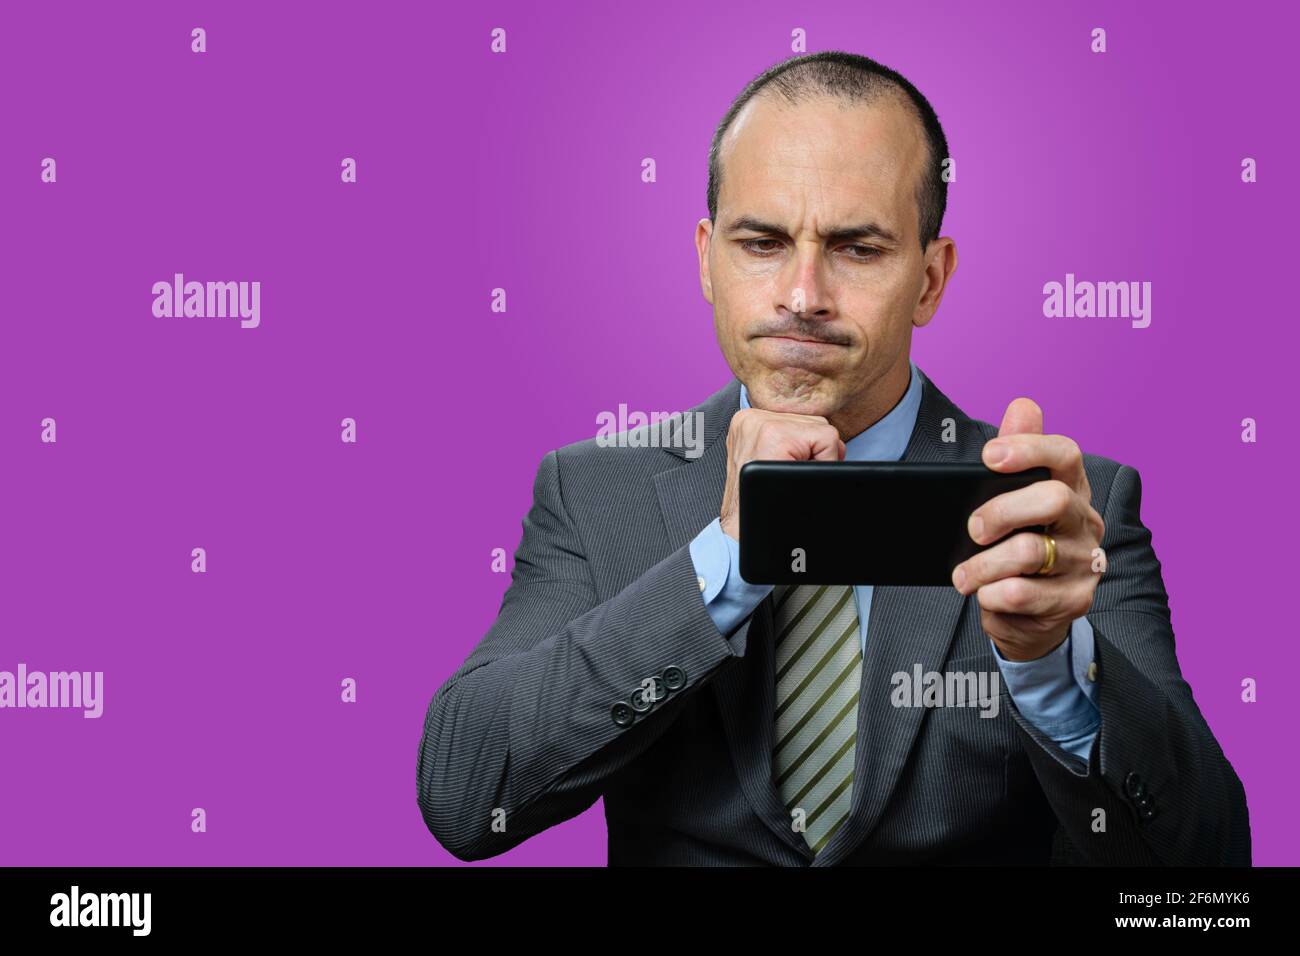 Homme mature avec costume et cravate, regardant son smartphone, déçu et avec son poing sous le menton. Arrière-plan violet. Banque D'Images